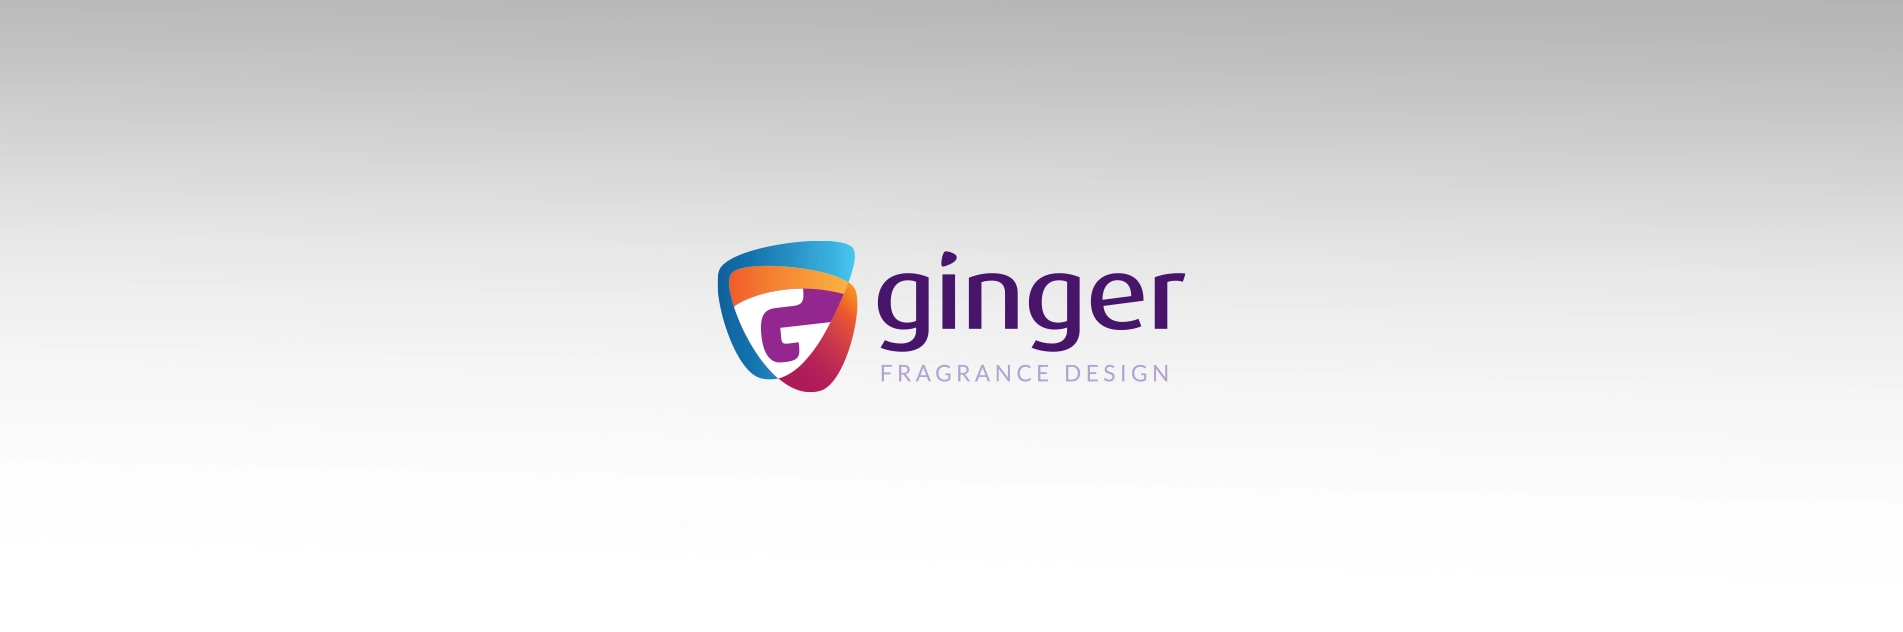 Há 7 anos no mercado de fragrâncias, Ginger investe em rebranding para marca refletir abrangência do negócio sem perder sua essência. 